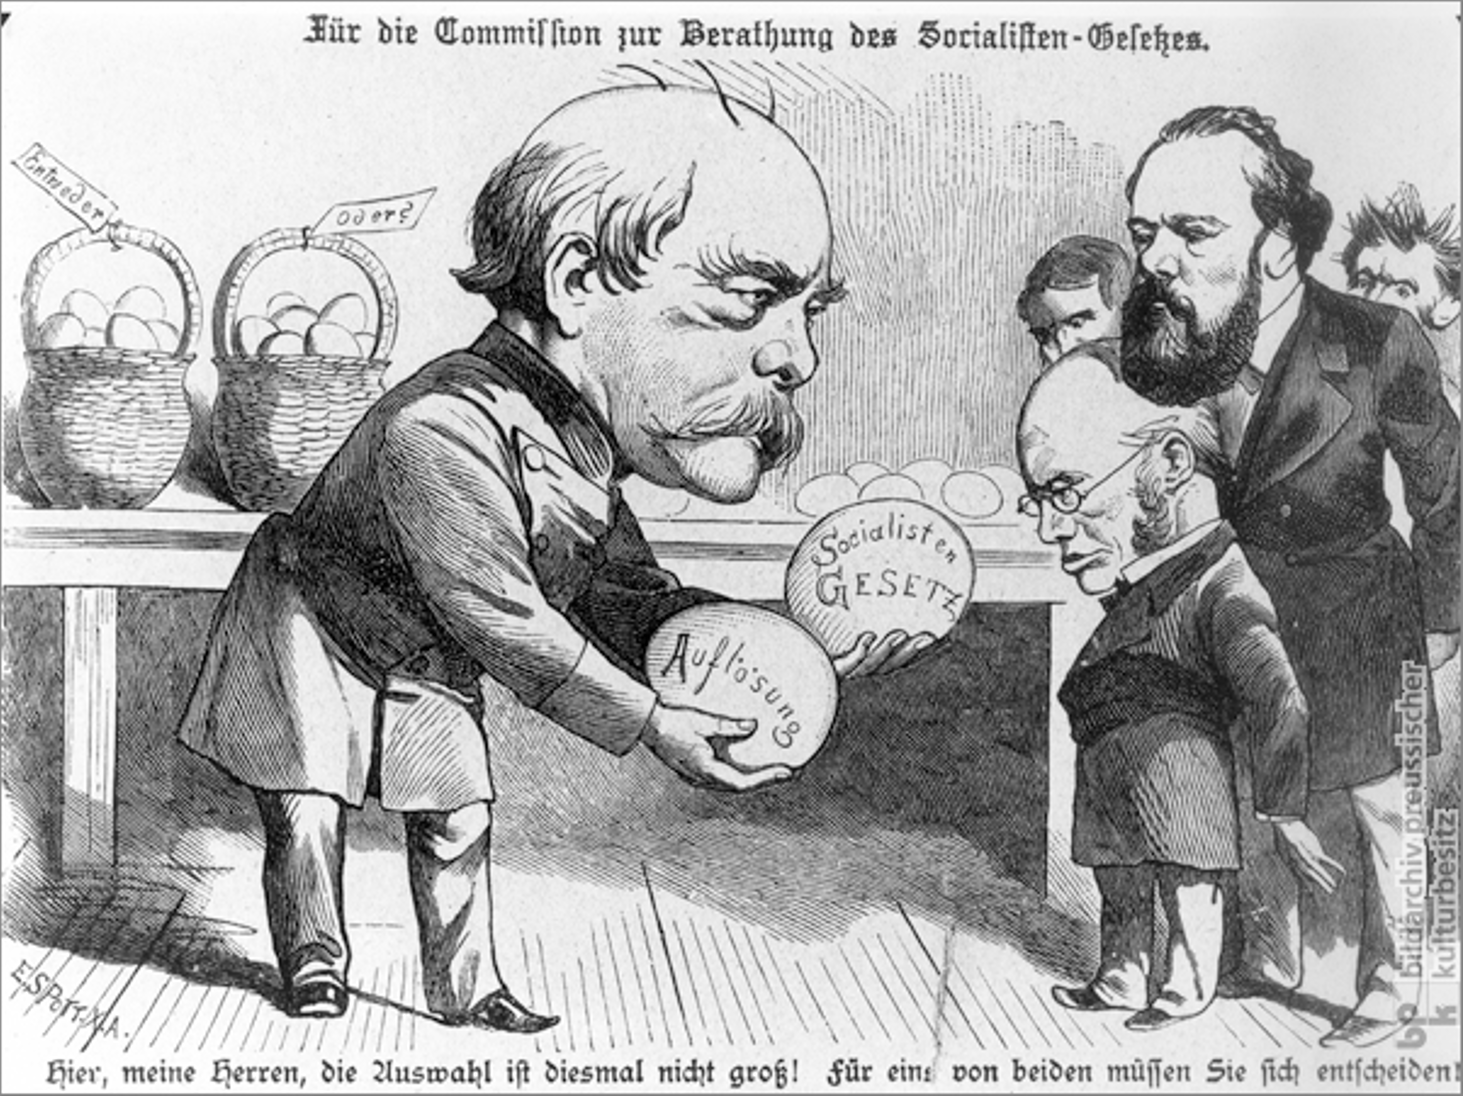 Caricature publiée dans le magazine Kladderadatsch de Bismarck proposant 2 oeufs aux députés du Reichstag: dissolution ou lois anti-socialistes, nommées "Sozialistengesetze"